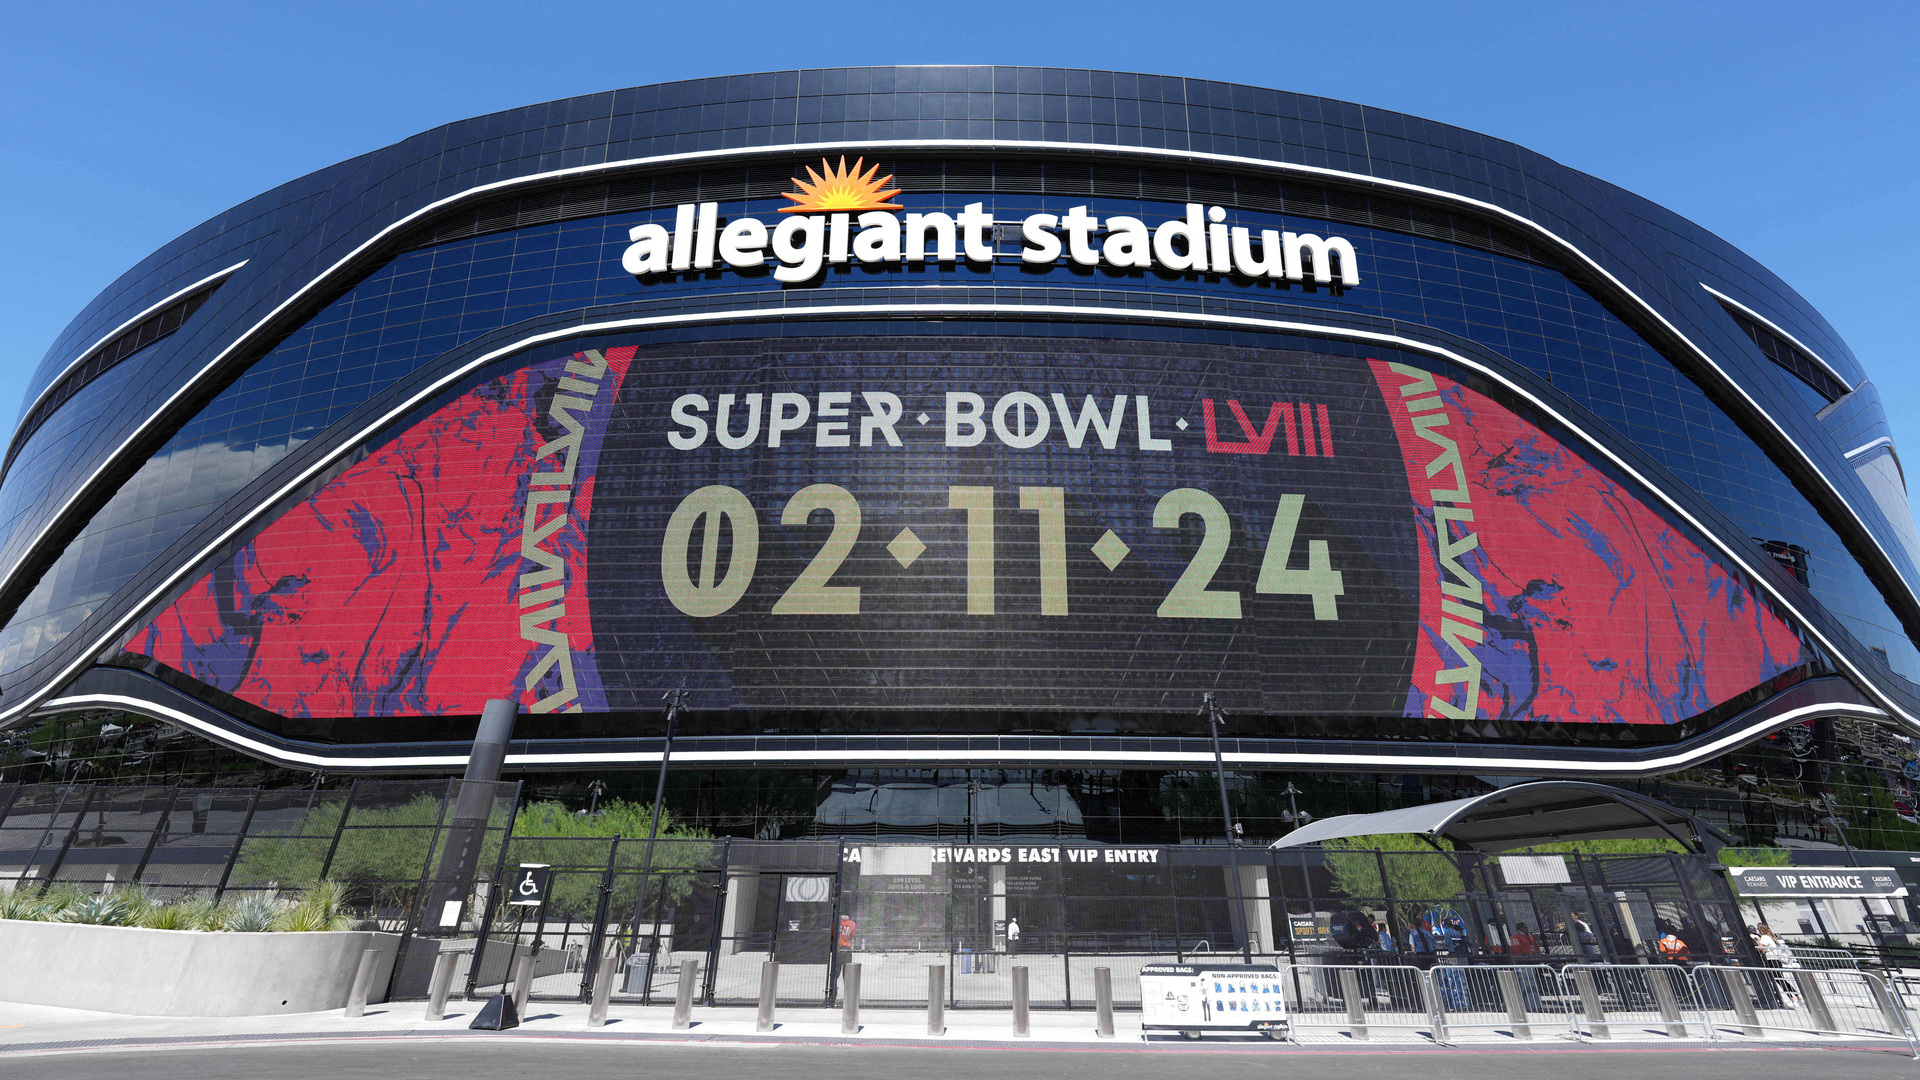 El Allegiant Stadium debuta en Super Bowls AS USA